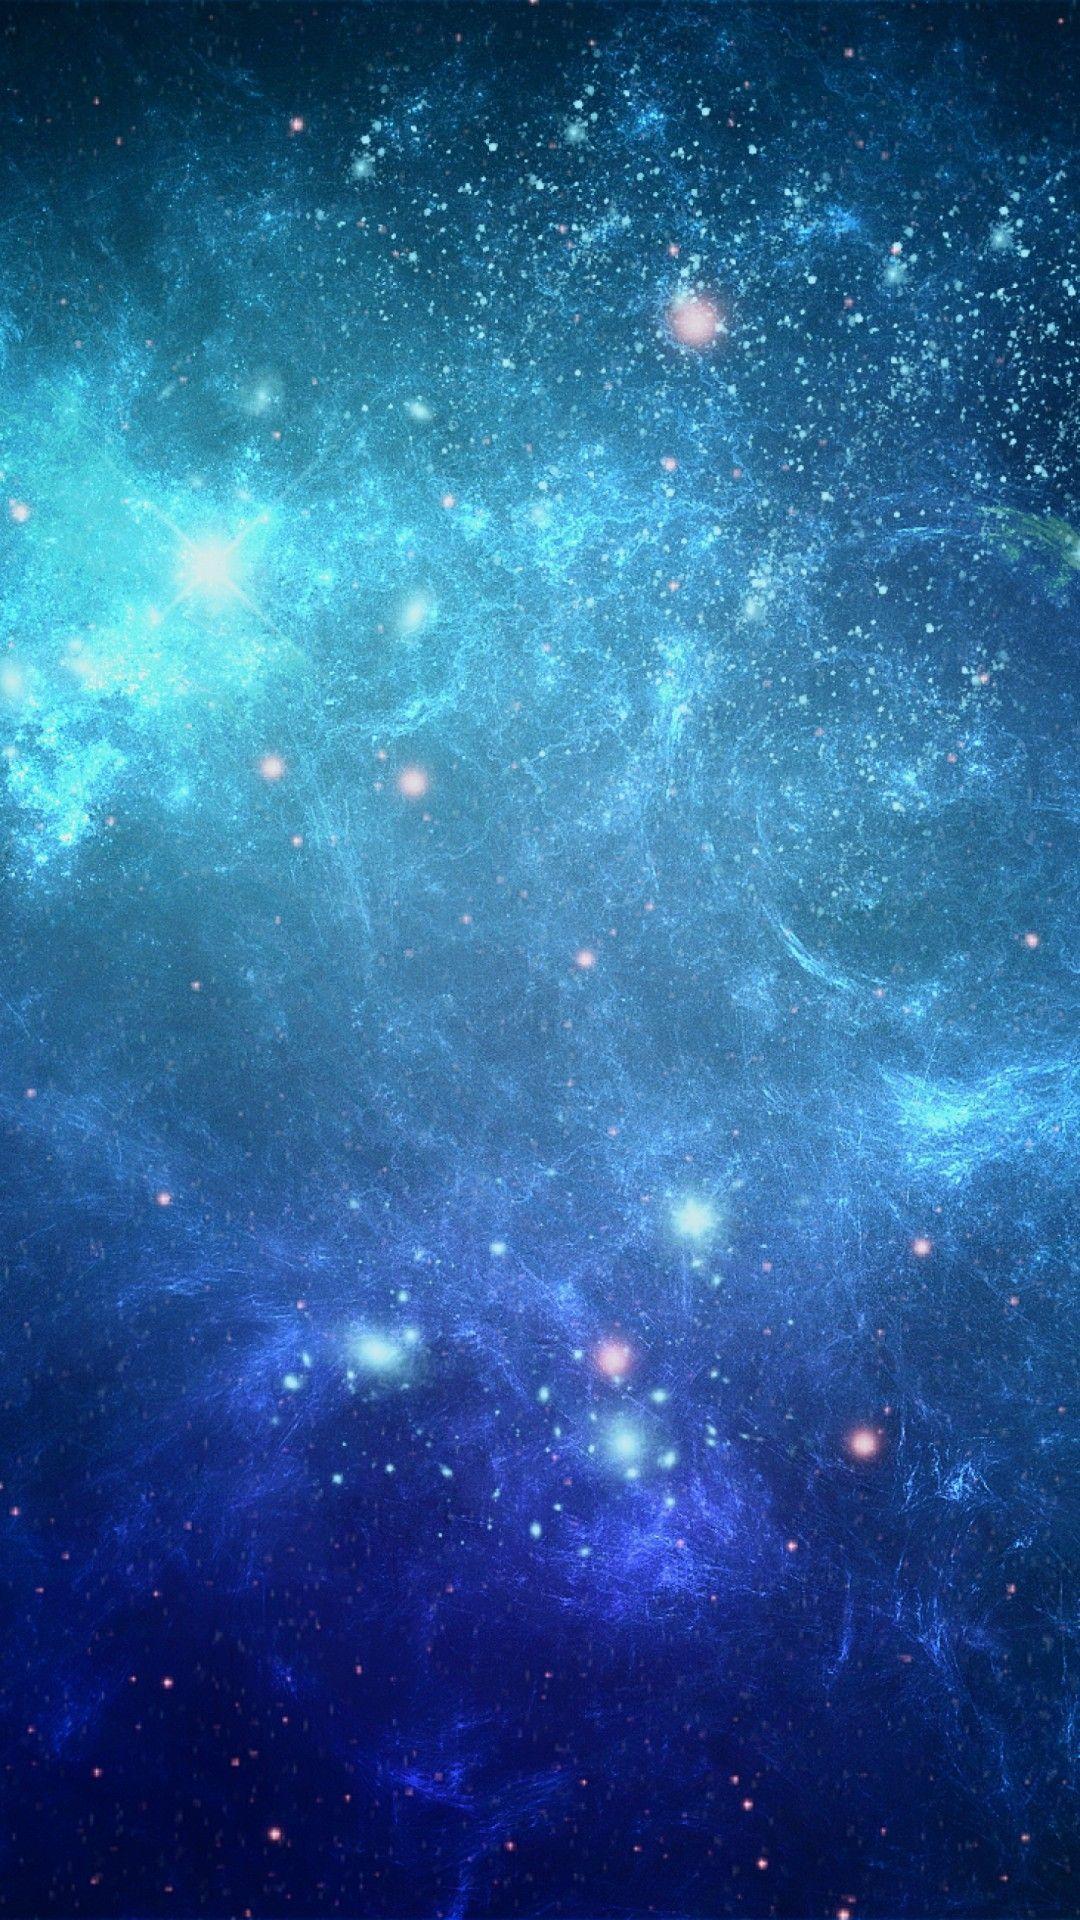 Hình nền Thiên Hà Xanh: Bạn muốn tìm kiếm một hình nền tuyệt đẹp cho màn hình của mình? Hãy để hình nền Thiên Hà Xanh mang đến sự bí ẩn và kỳ lạ cho không gian đặc biệt của bạn. Bạn sẽ không thể rời mắt khỏi màn hình của mình khi được trang trí bởi hình nền Thiên Hà Xanh này.